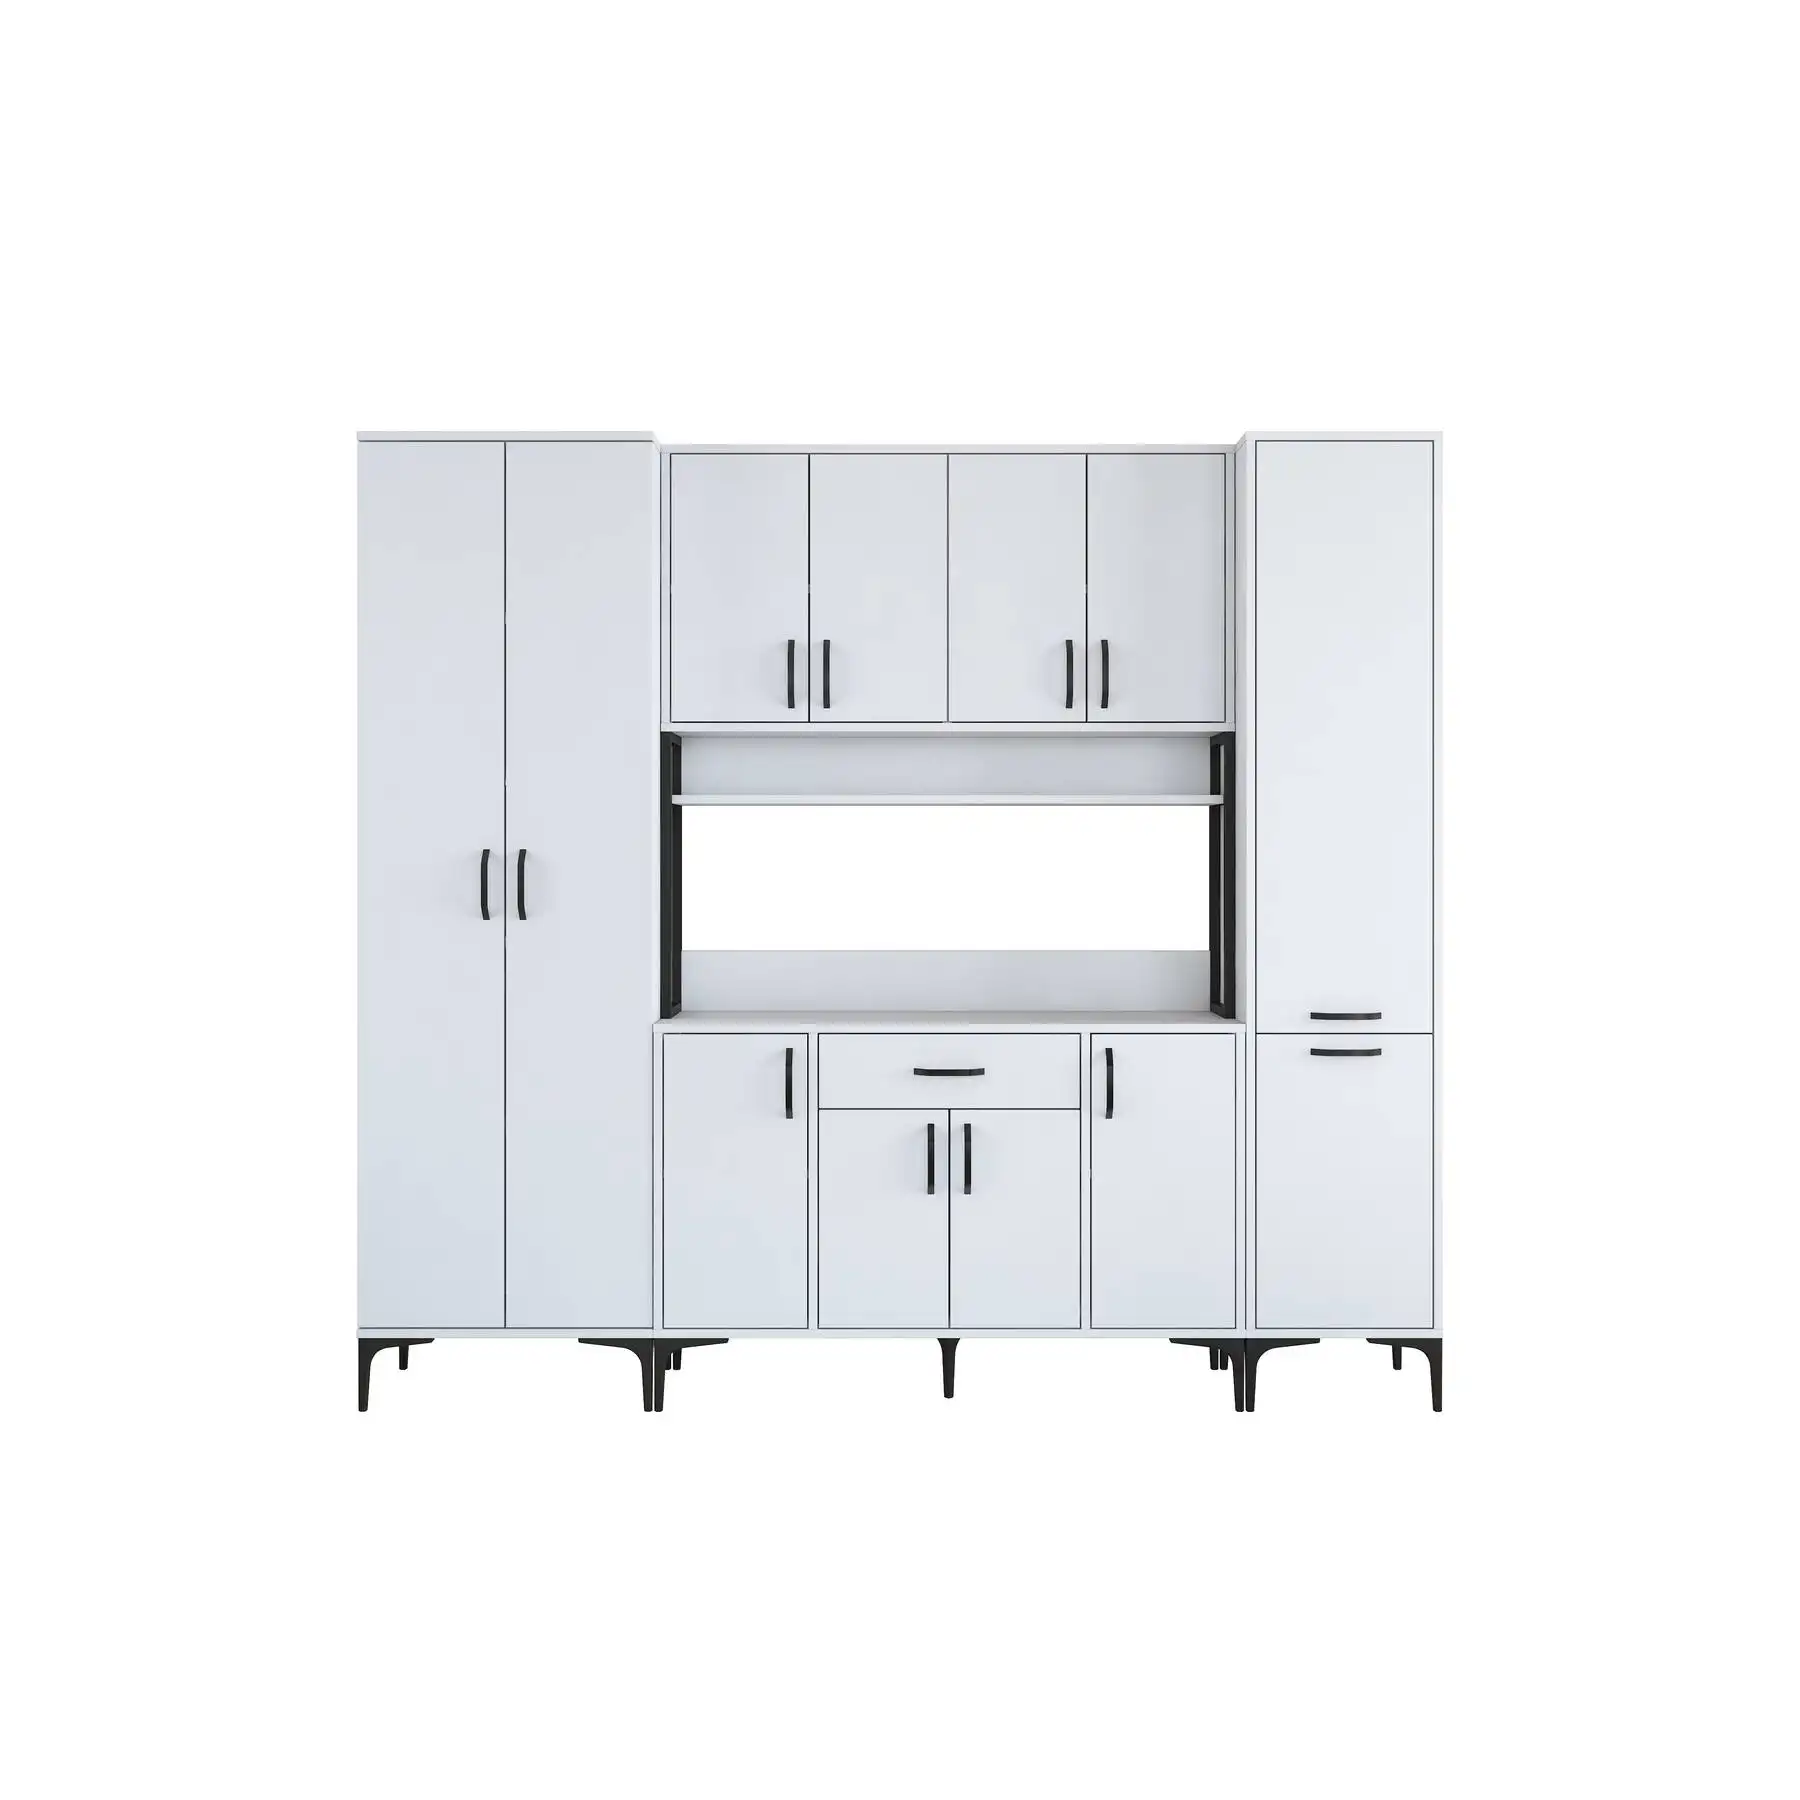 Rani JE132 armoire polyvalente pour salle de bain balcon cuisine cellier garde-manger couleur blanche turc prix d'usine en gros 3053